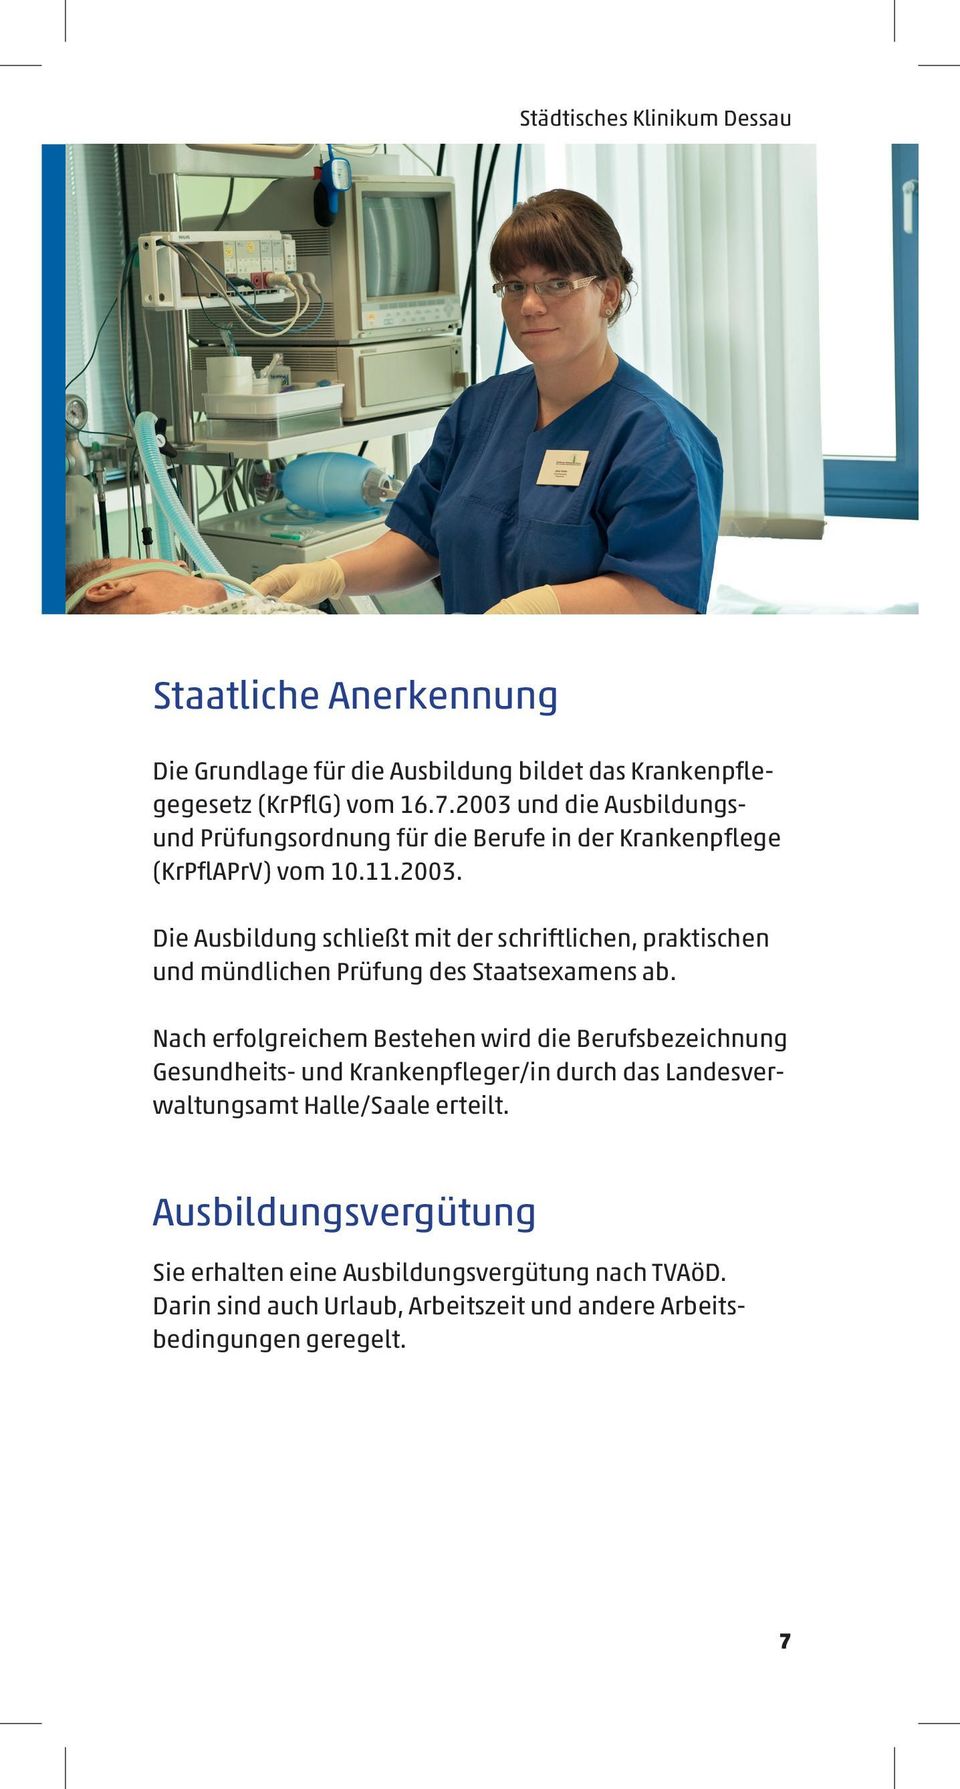 Nach erfolgreichem Bestehen wird die Berufsbezeichnung Gesundheits- und Krankenpfleger/in durch das Landesverwaltungsamt Halle/Saale erteilt.